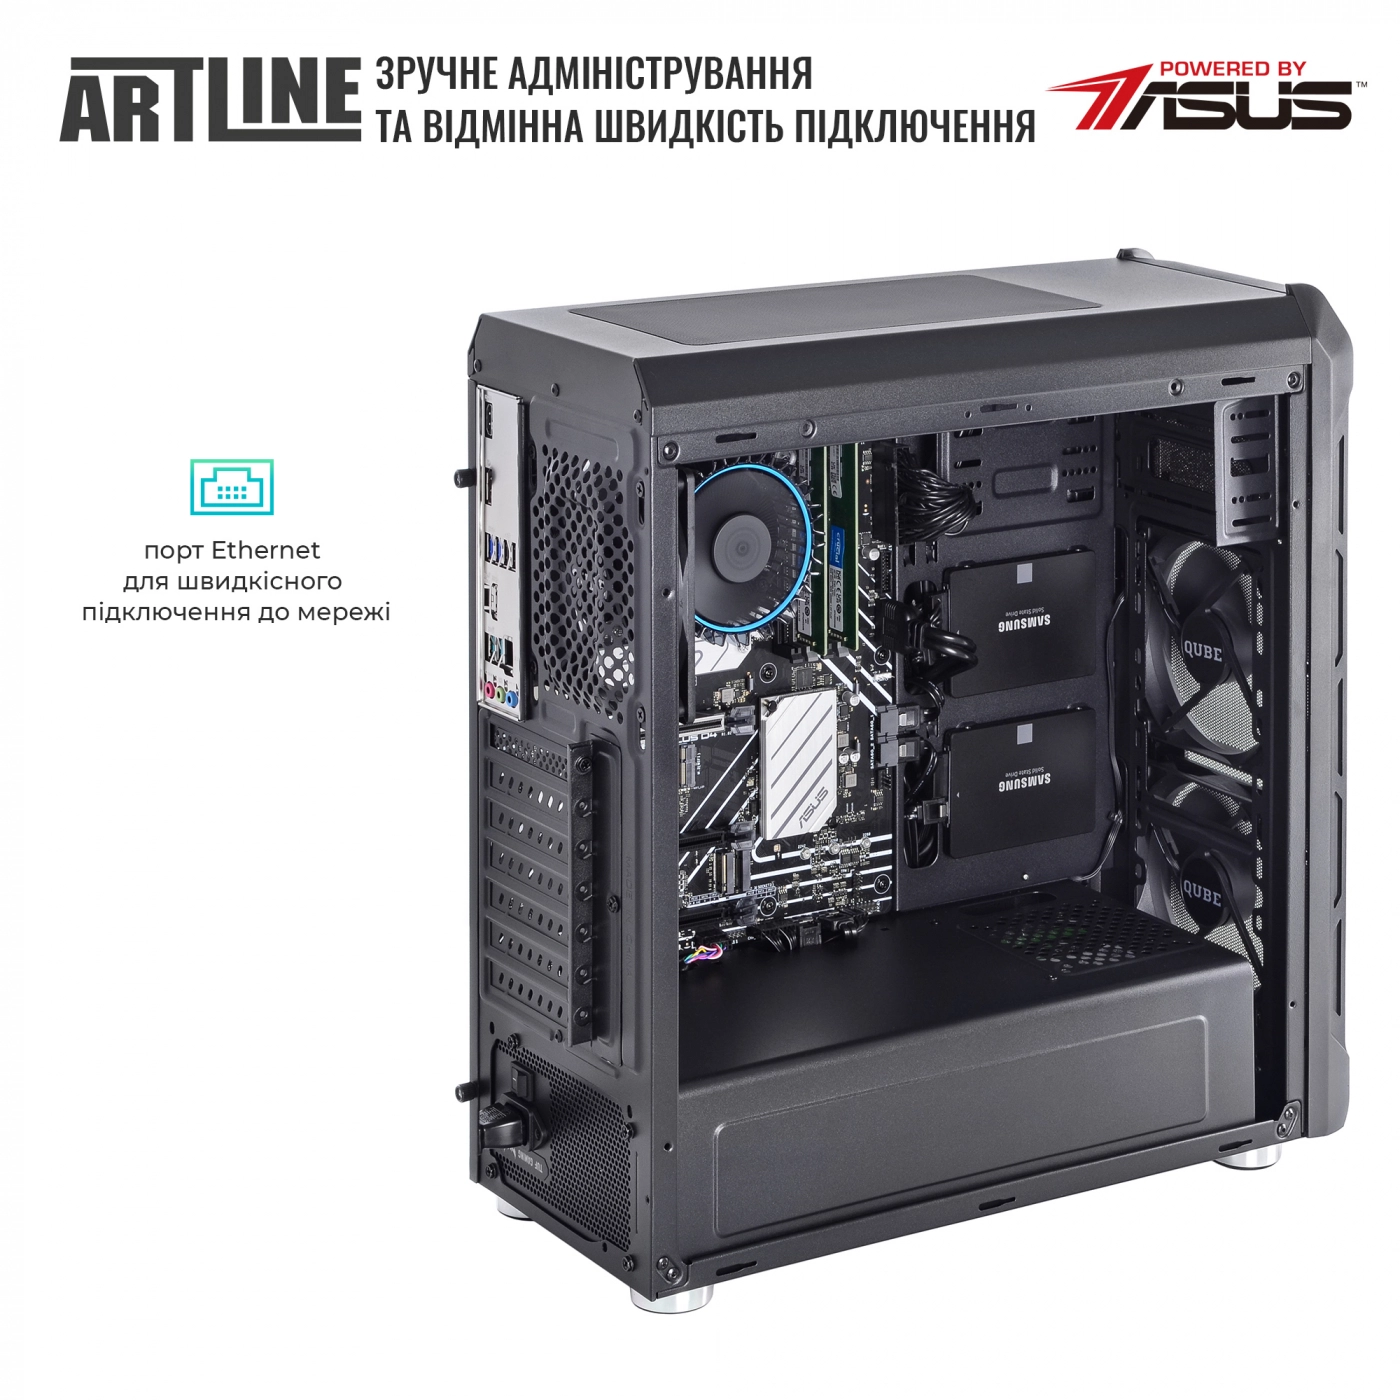 Купить Сервер ARTLINE Business T13v15 - фото 6